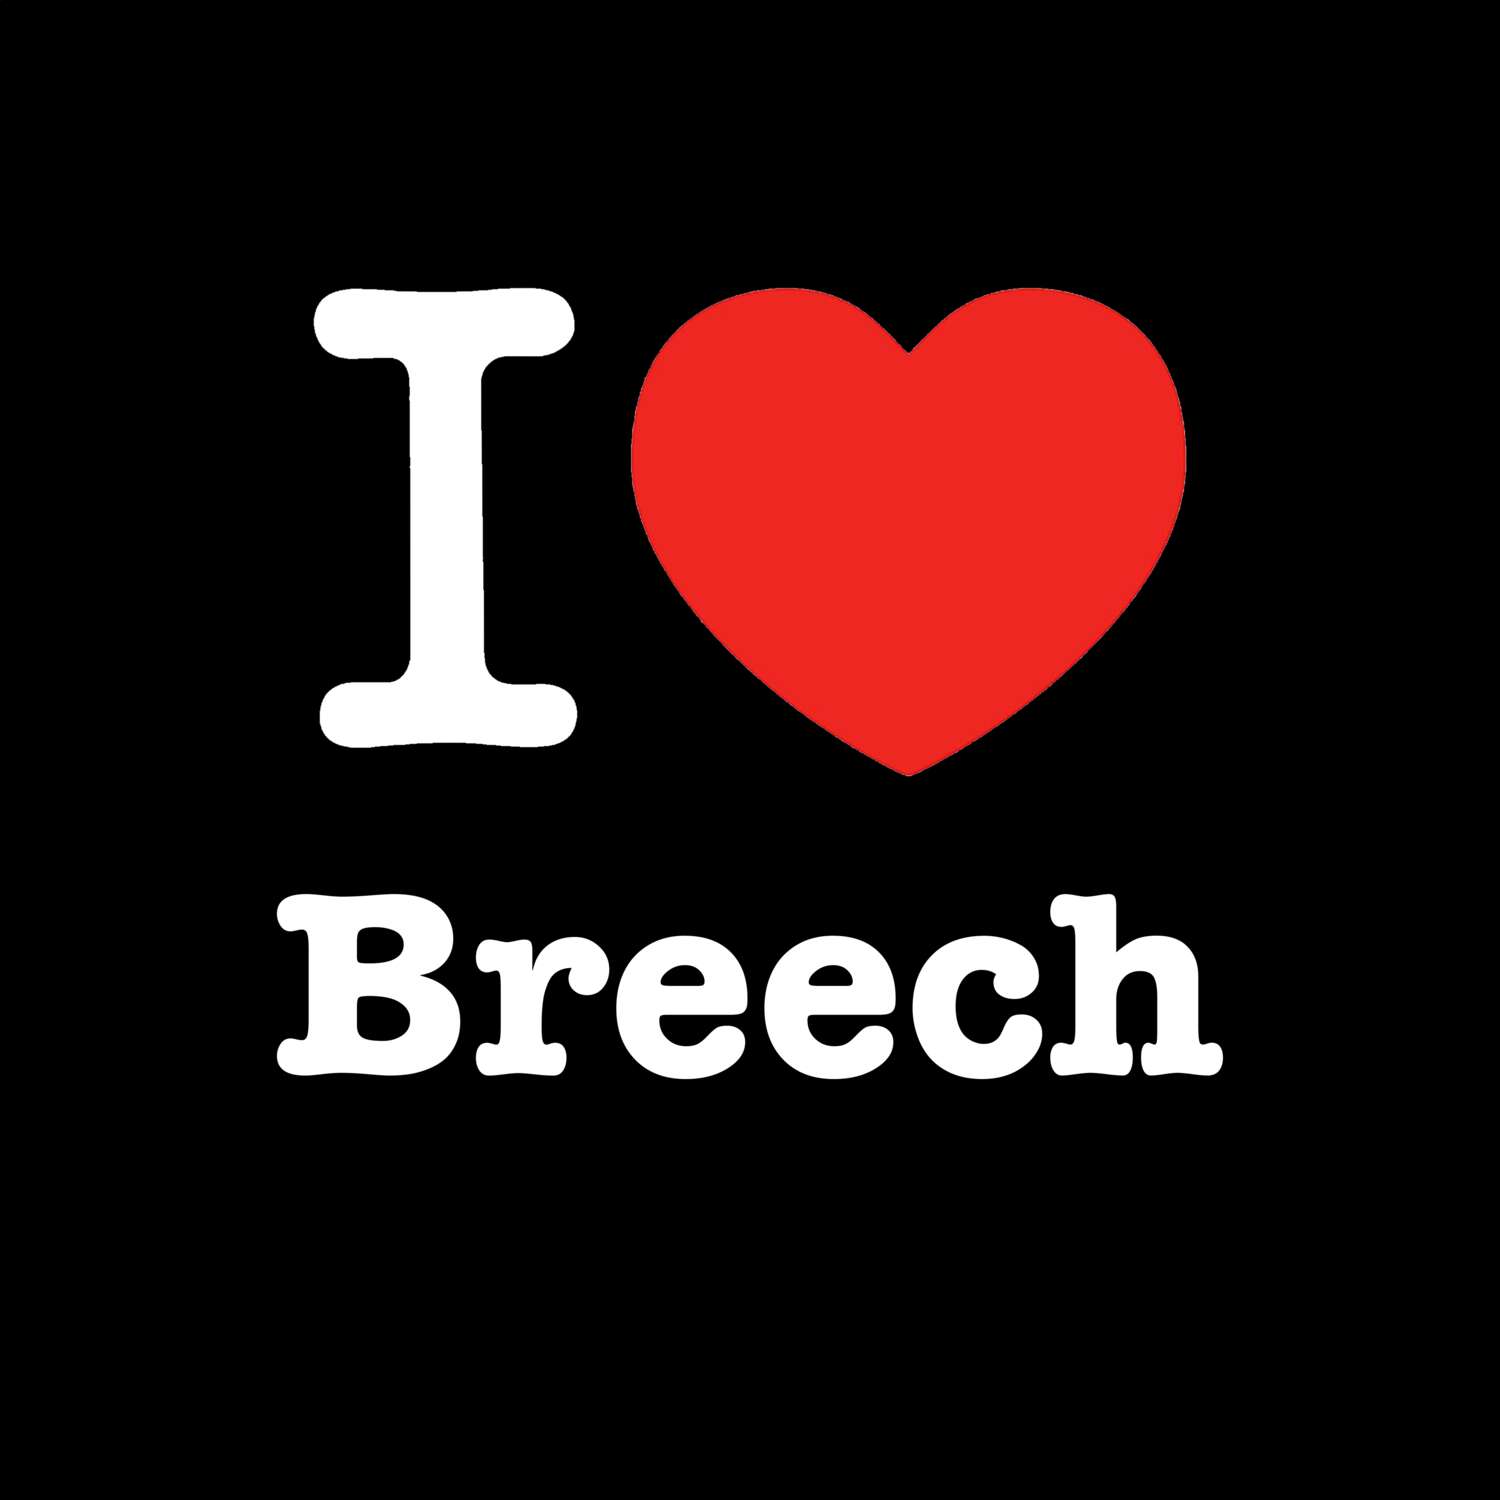 Breech T-Shirt »I love«